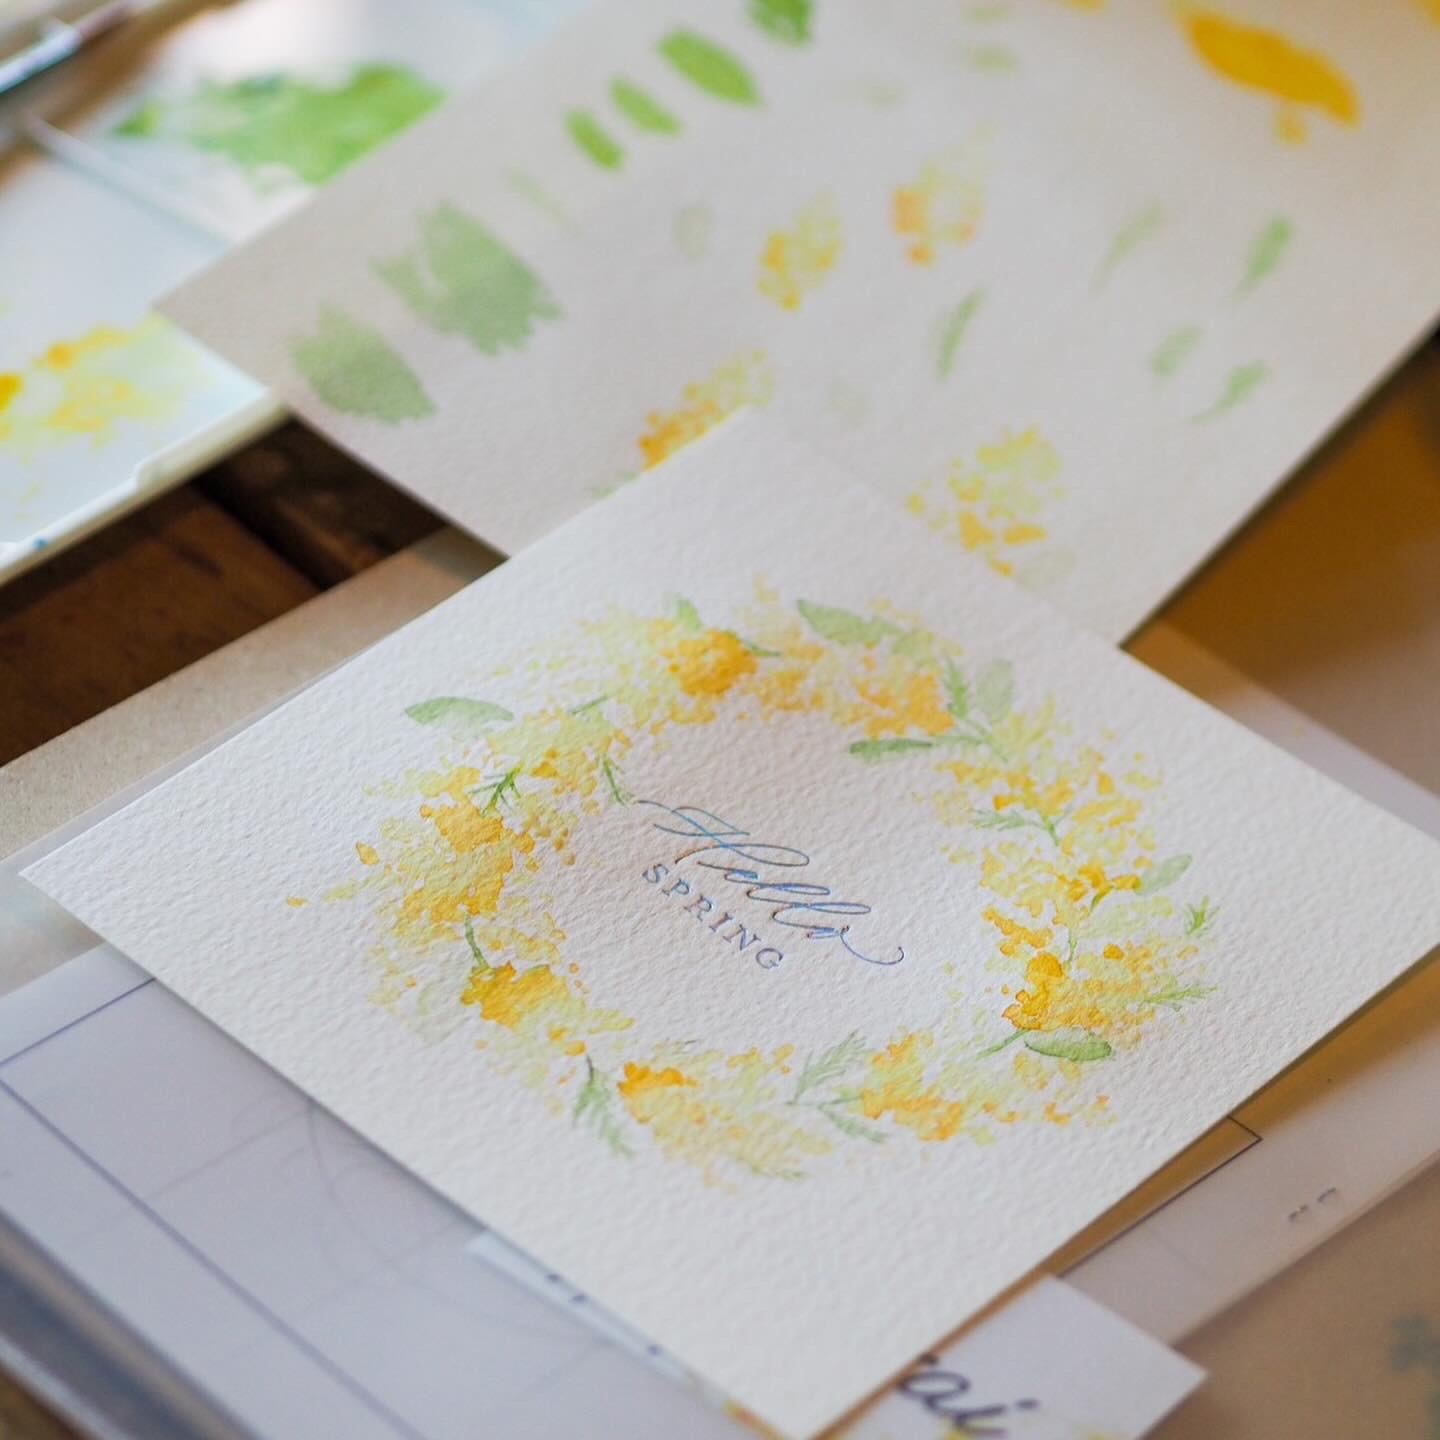 水彩画で季節のお花 ミモザを描くワークショップの写真3枚目